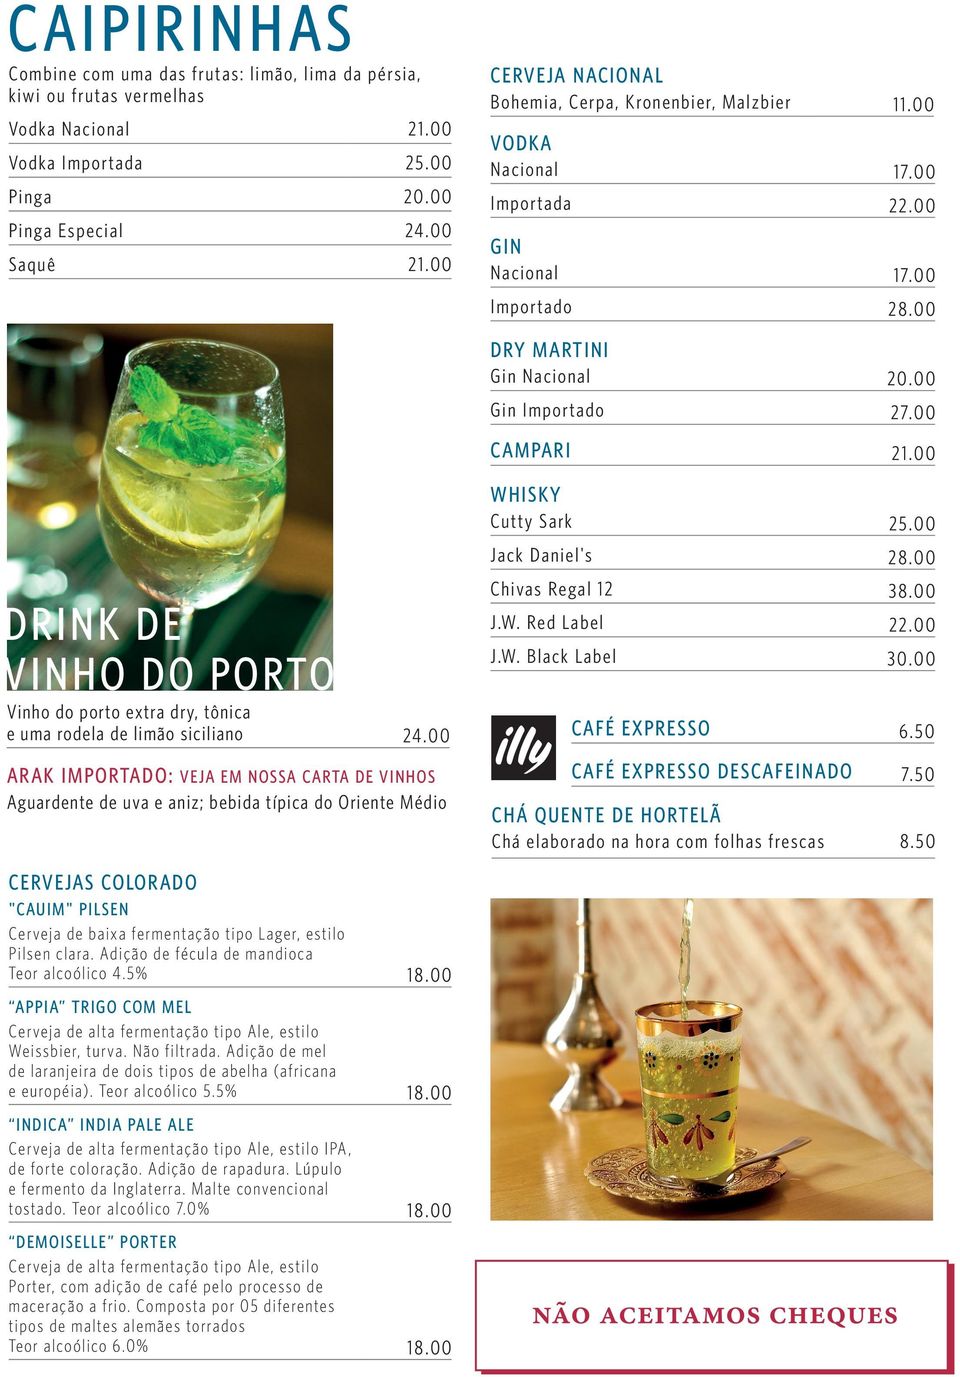 00 Whisky Cutty Sark 25.00 Jack Daniel's 28.00 drink de vinho do porto Vinho do porto extra dry, tônica e uma rodela de limão siciliano 24.